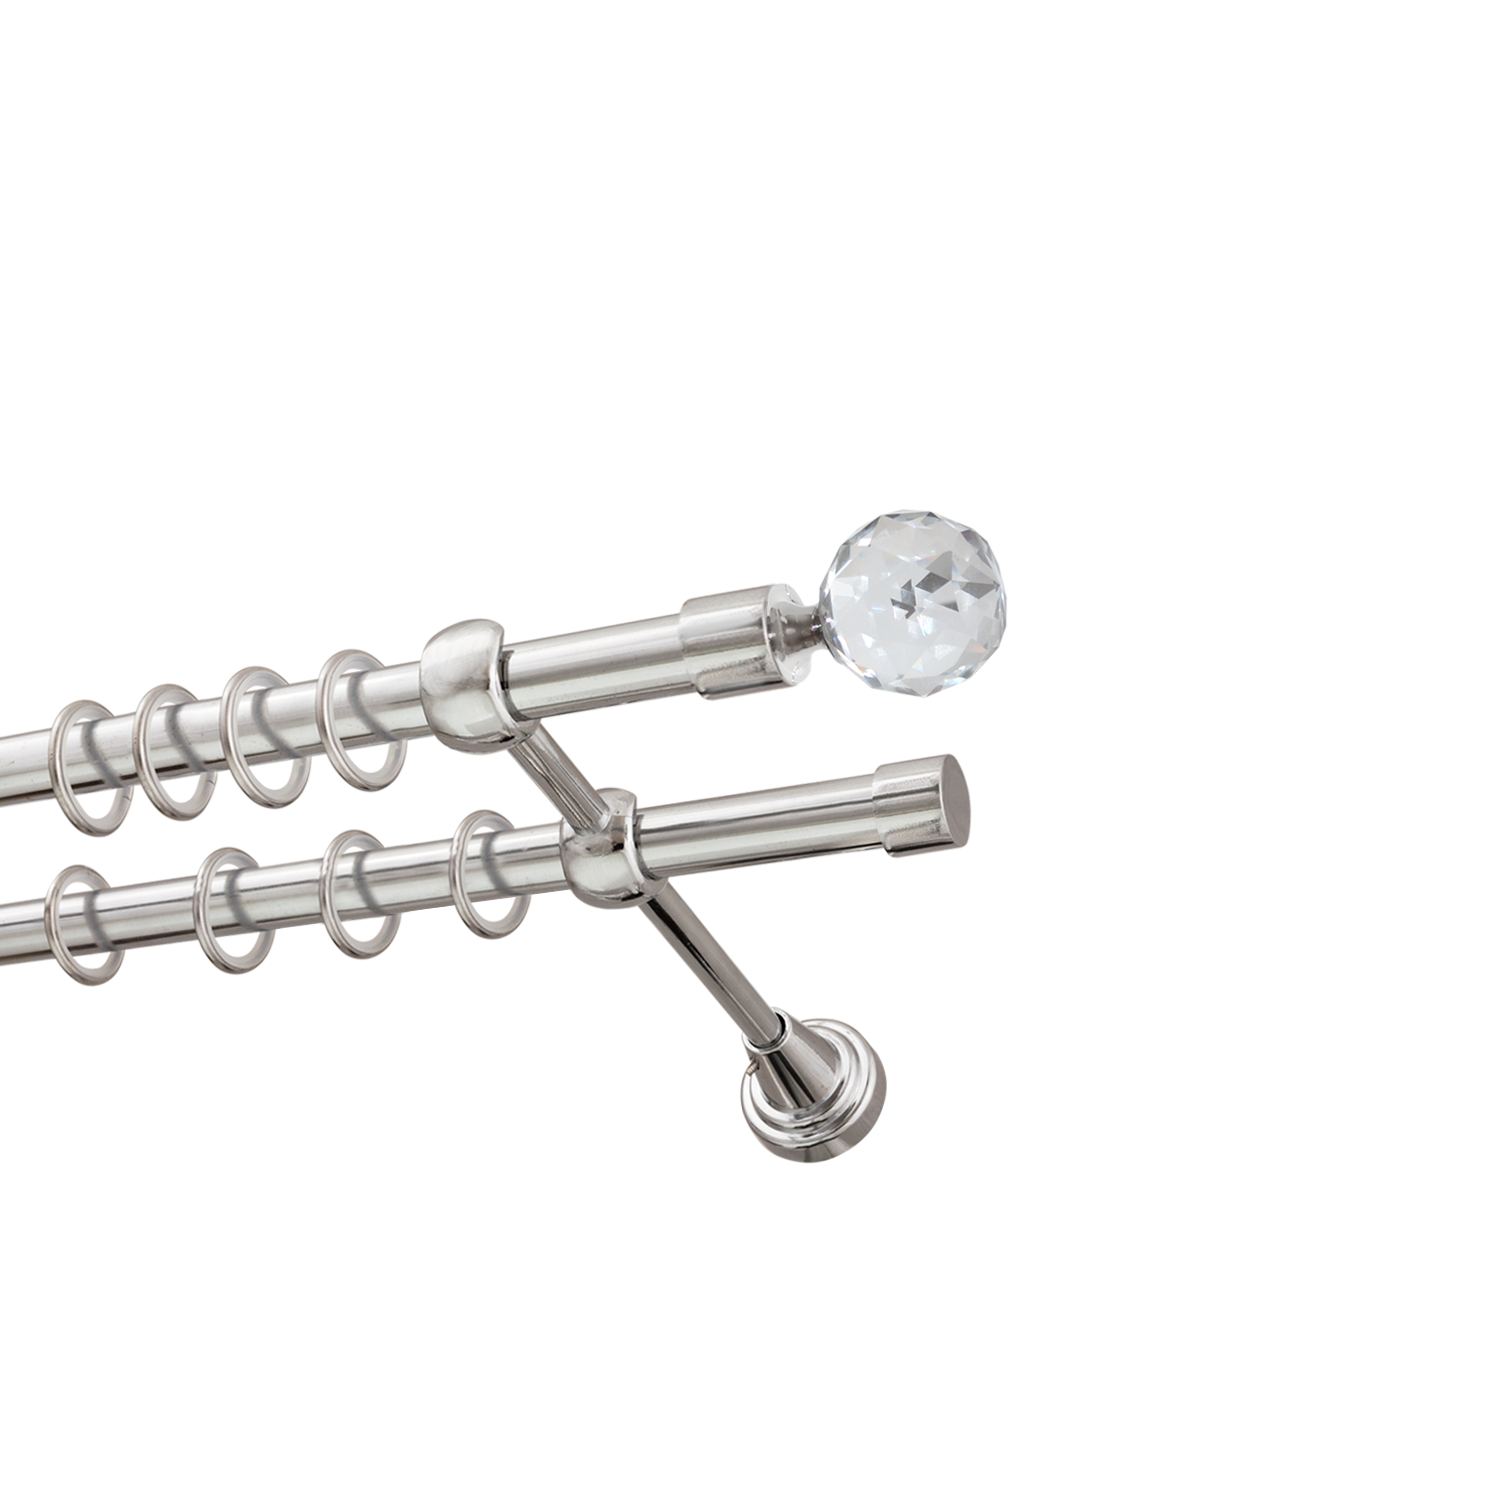 Металлический карниз для штор Карат, двухрядный 16/16 мм, серебро, гладкая штанга, длина 200 см - фото Wikidecor.ru